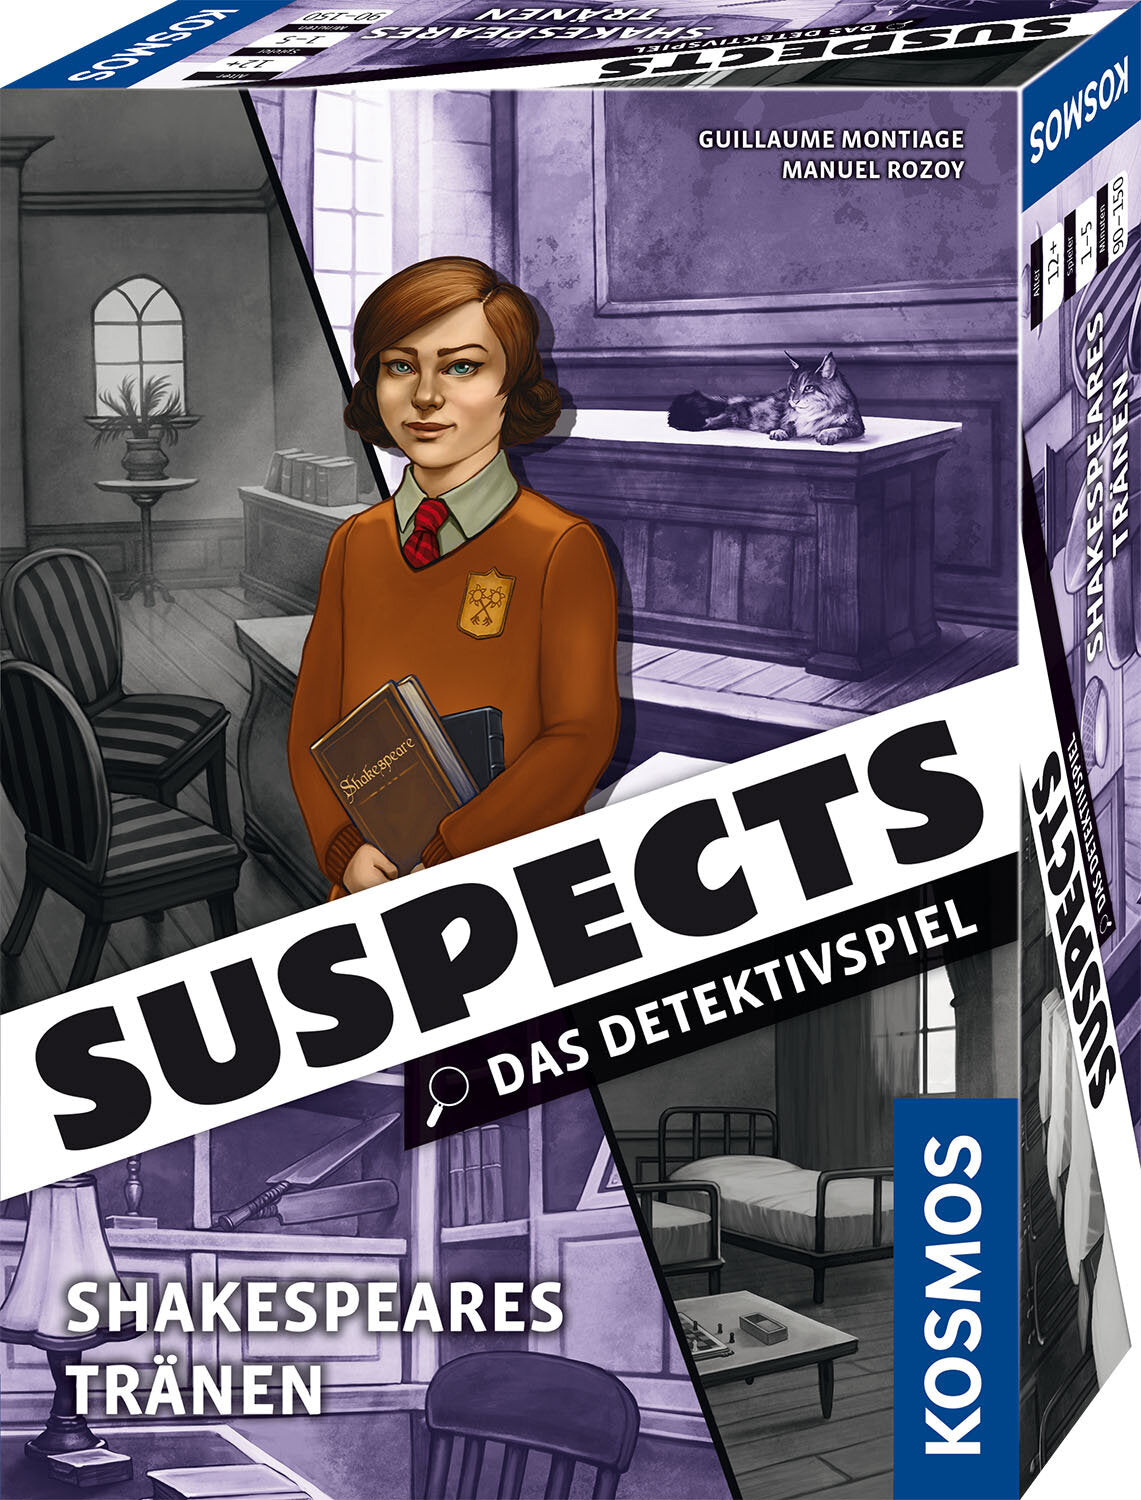 Suspects: Shakespears Tränen